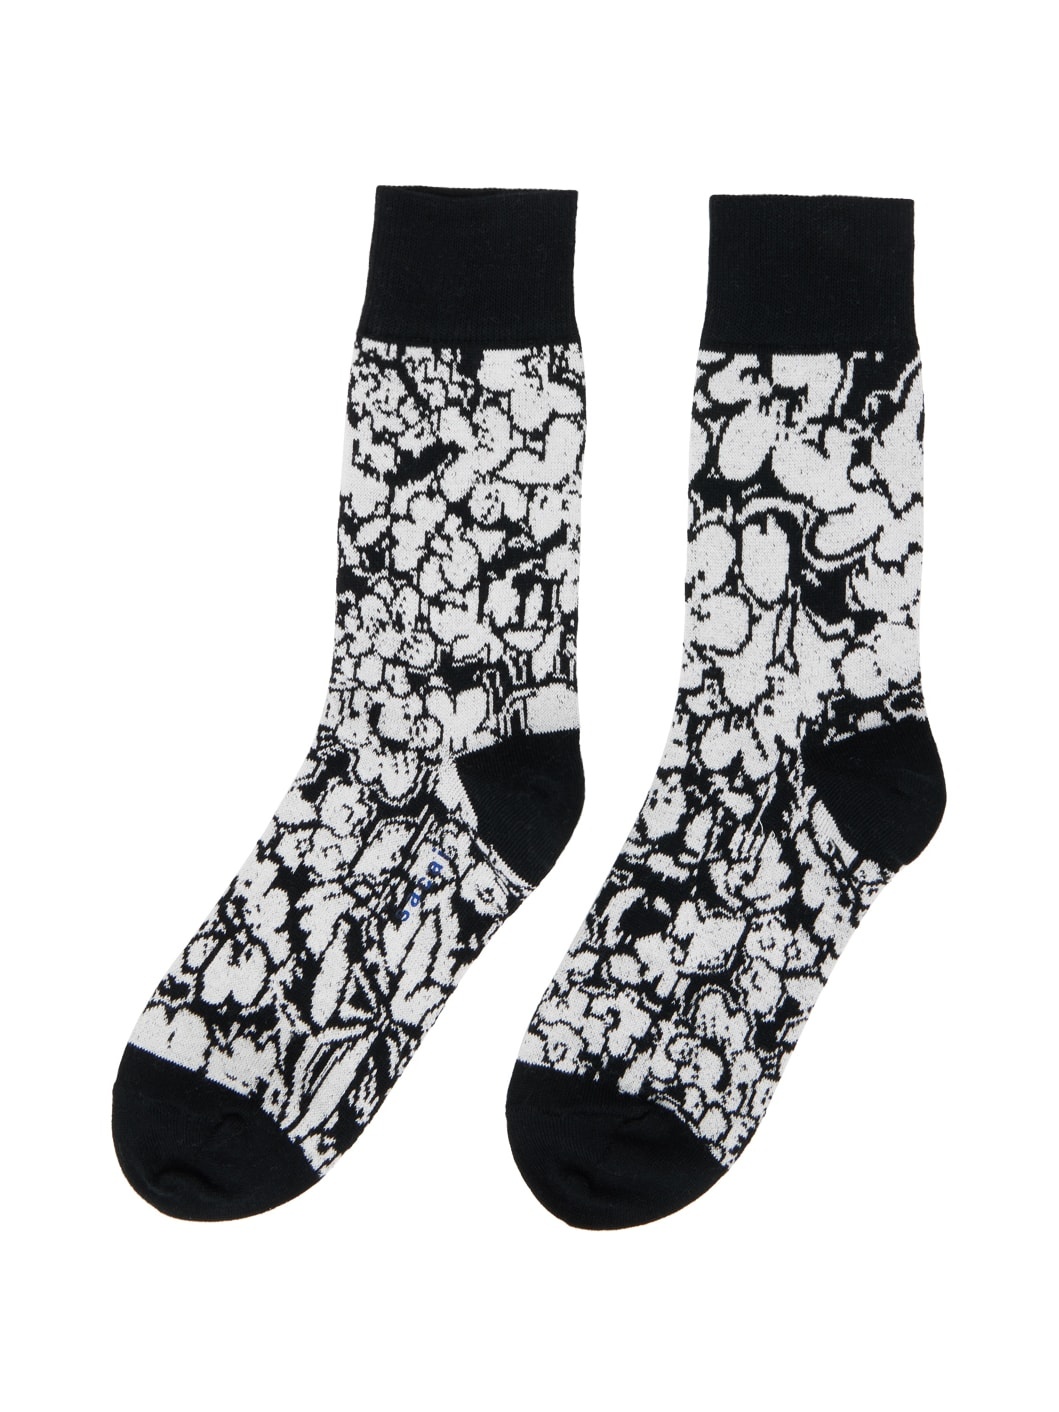 Black & White Floral Socks - 2